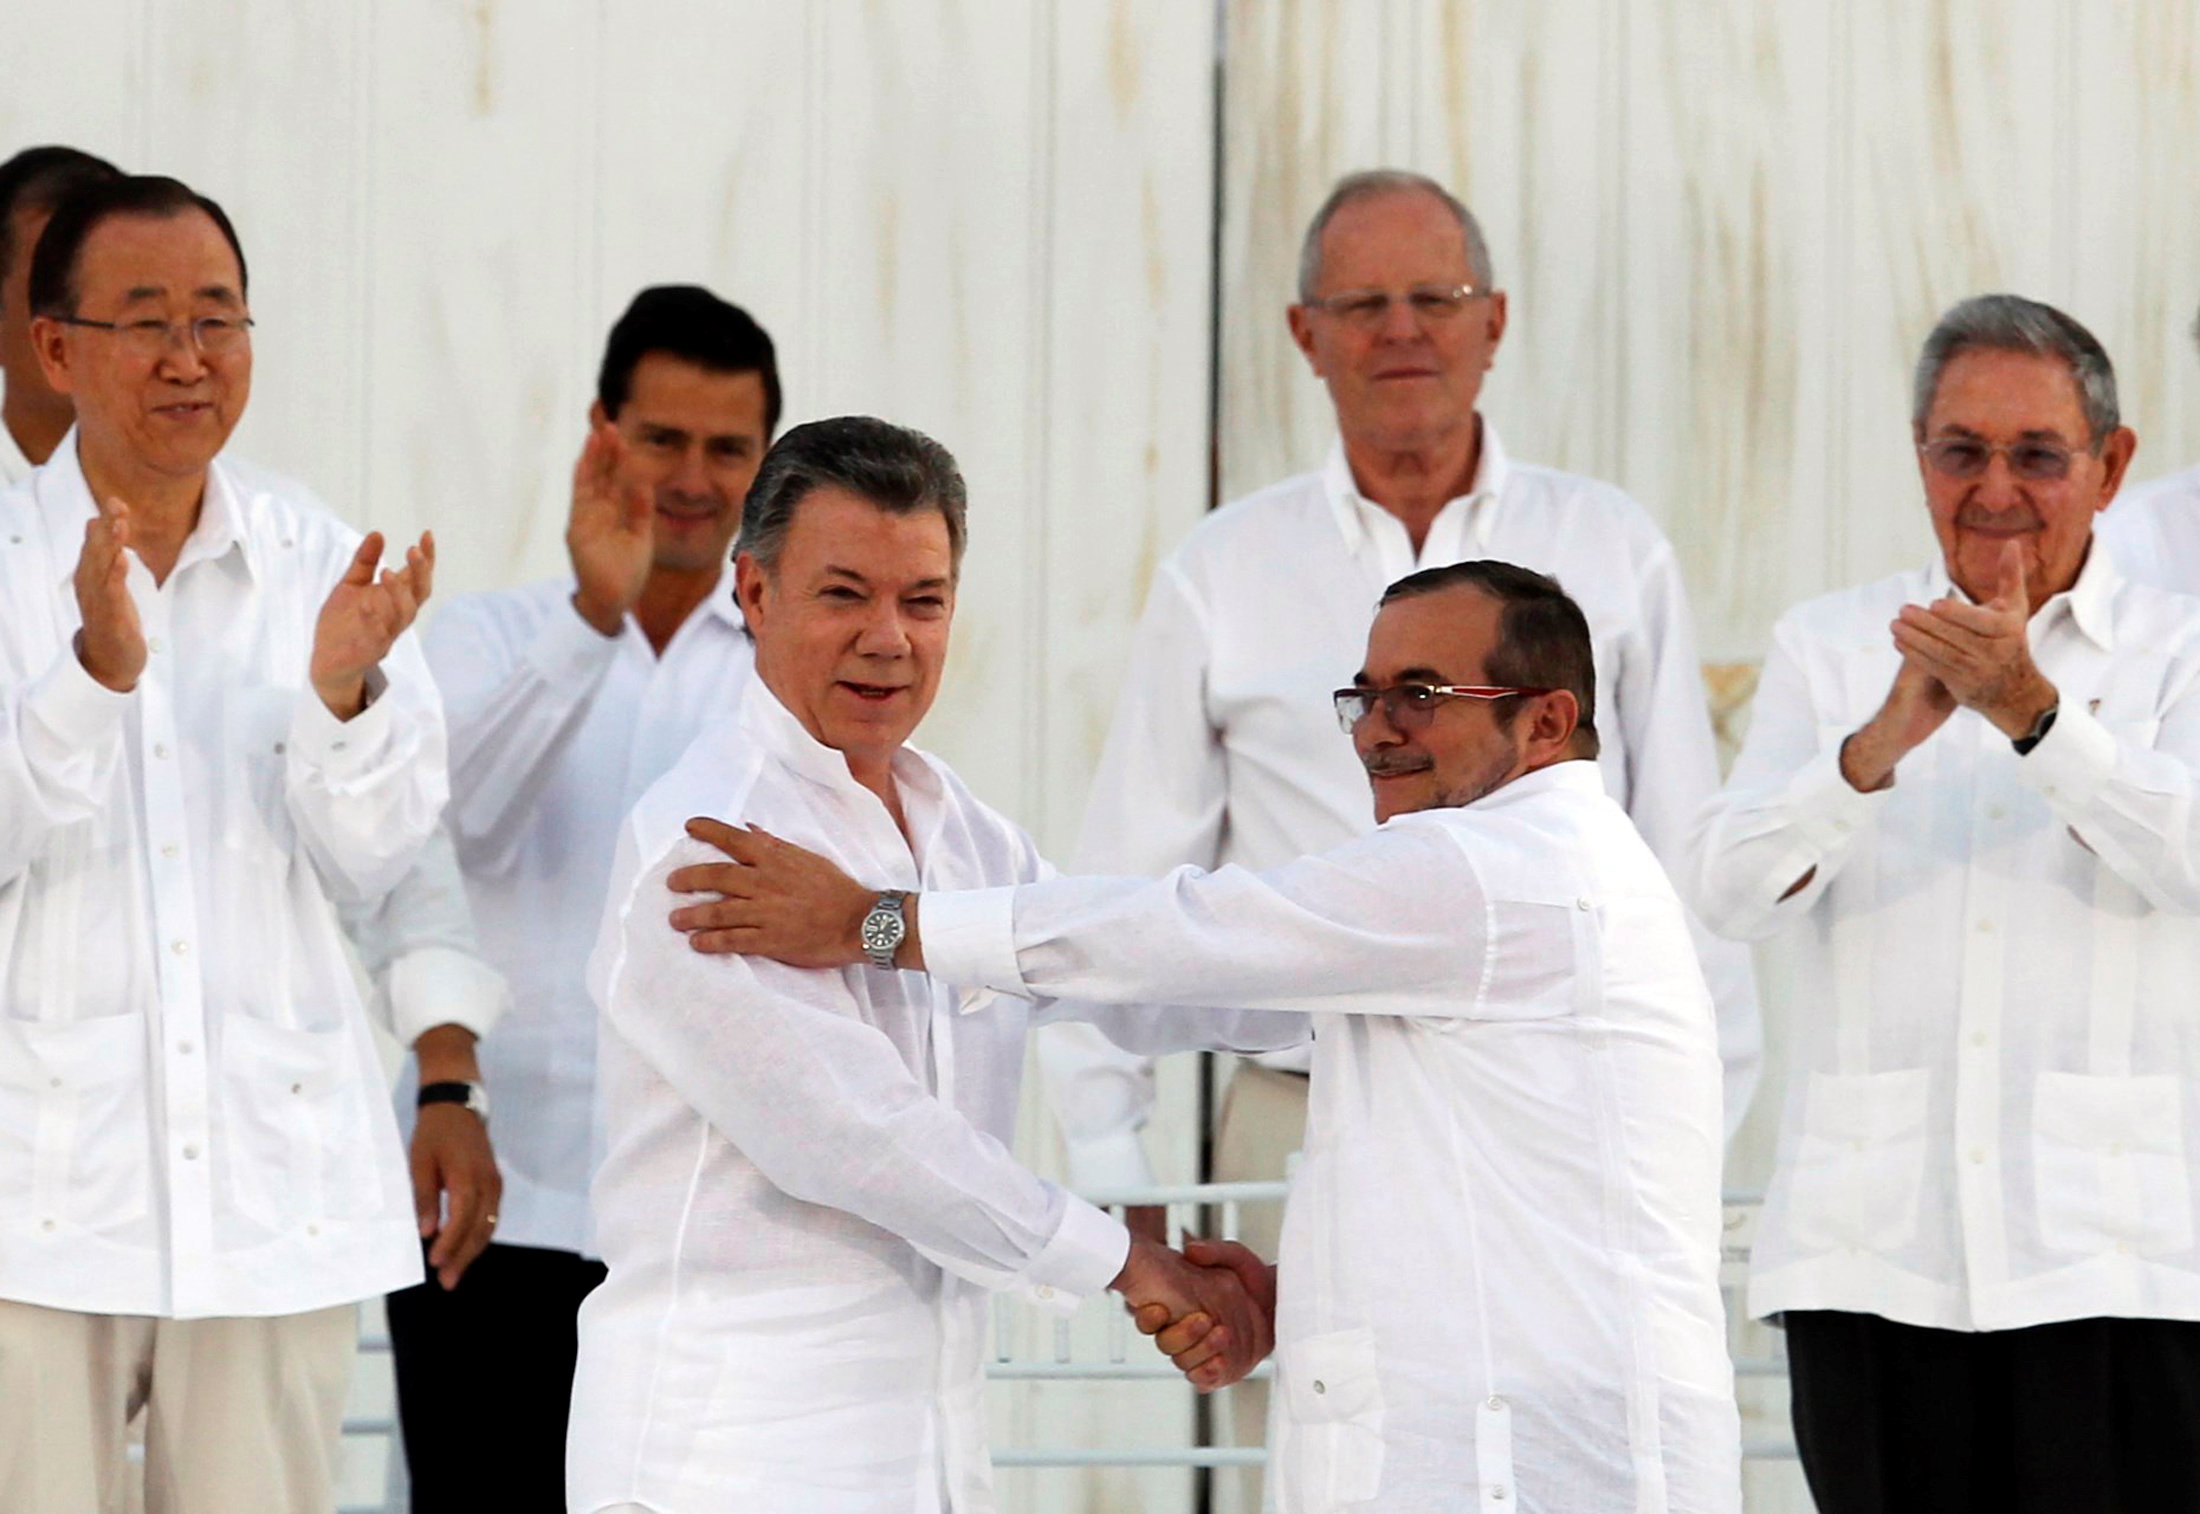 El No en Colombia aniquila casi la posibilidad de un Nobel de la paz